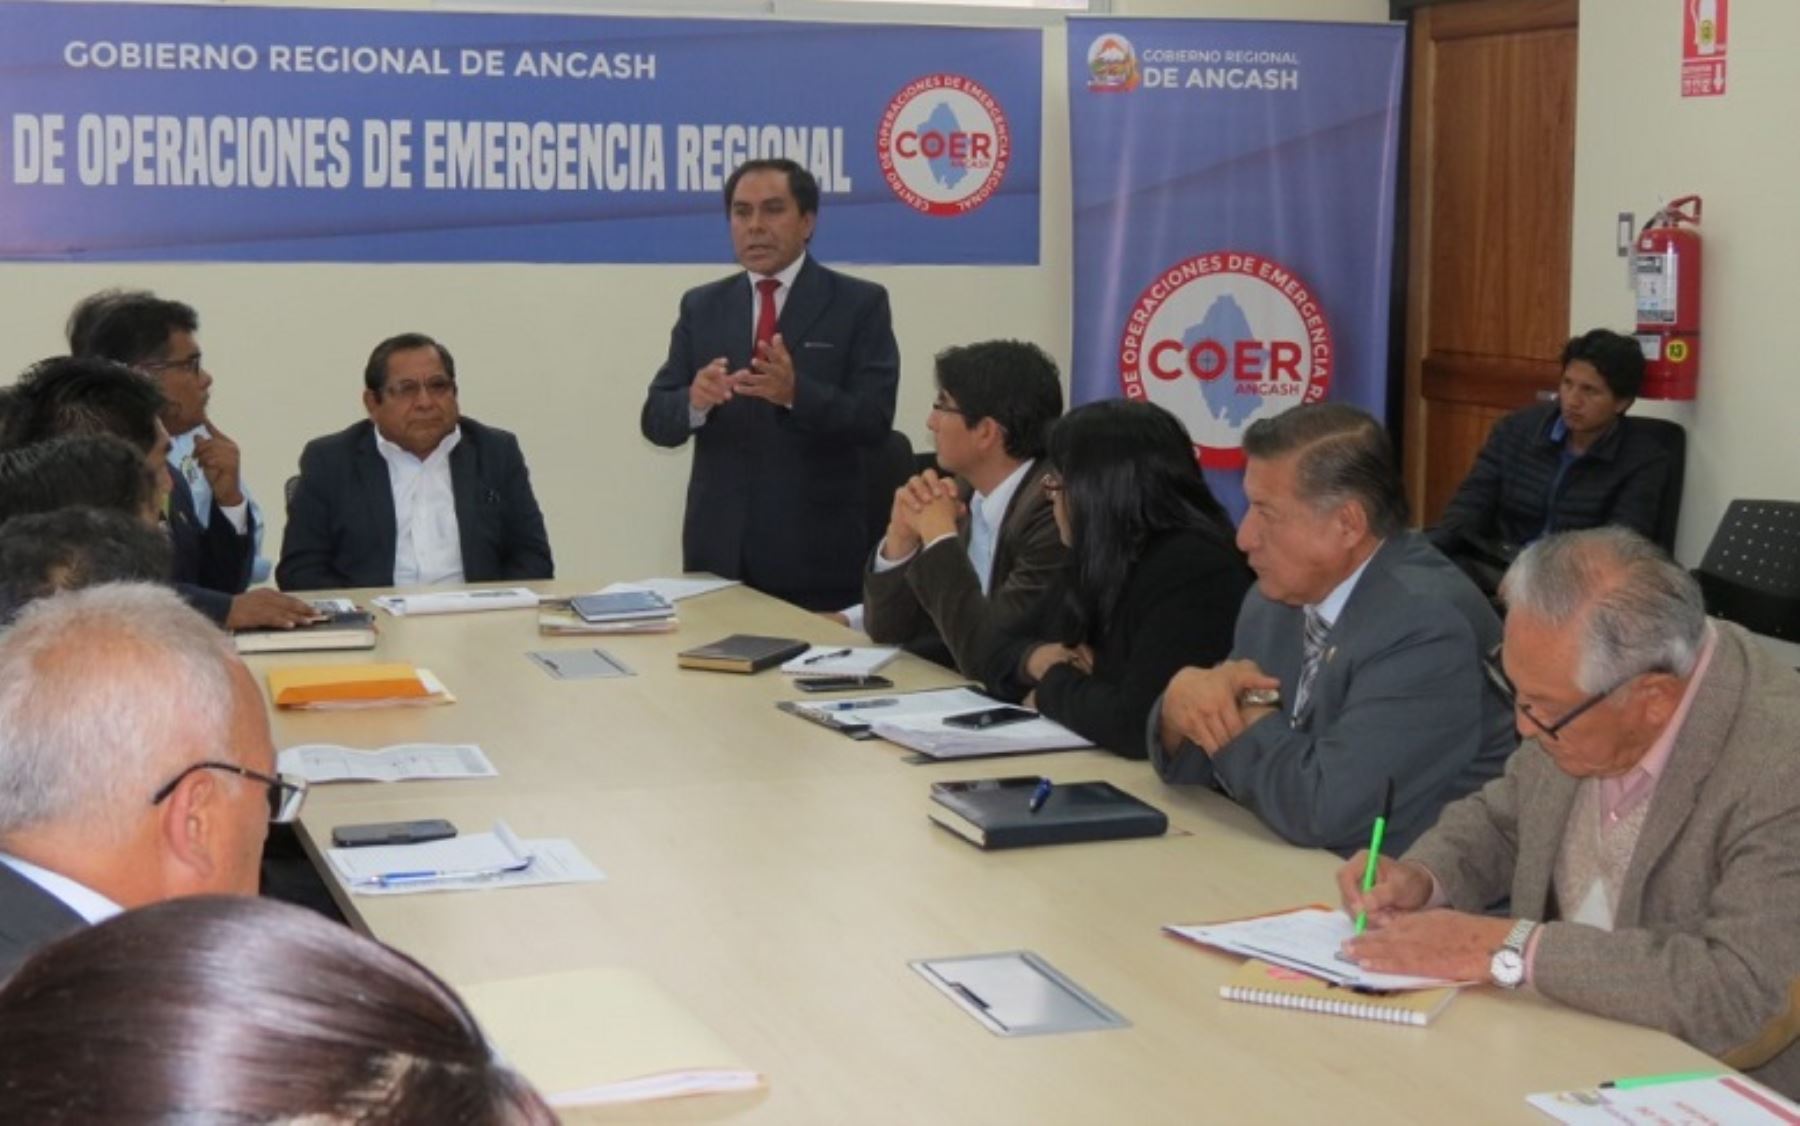 Gobernador regional de Áncash, Luis Gamarra, preside reunión del COER.